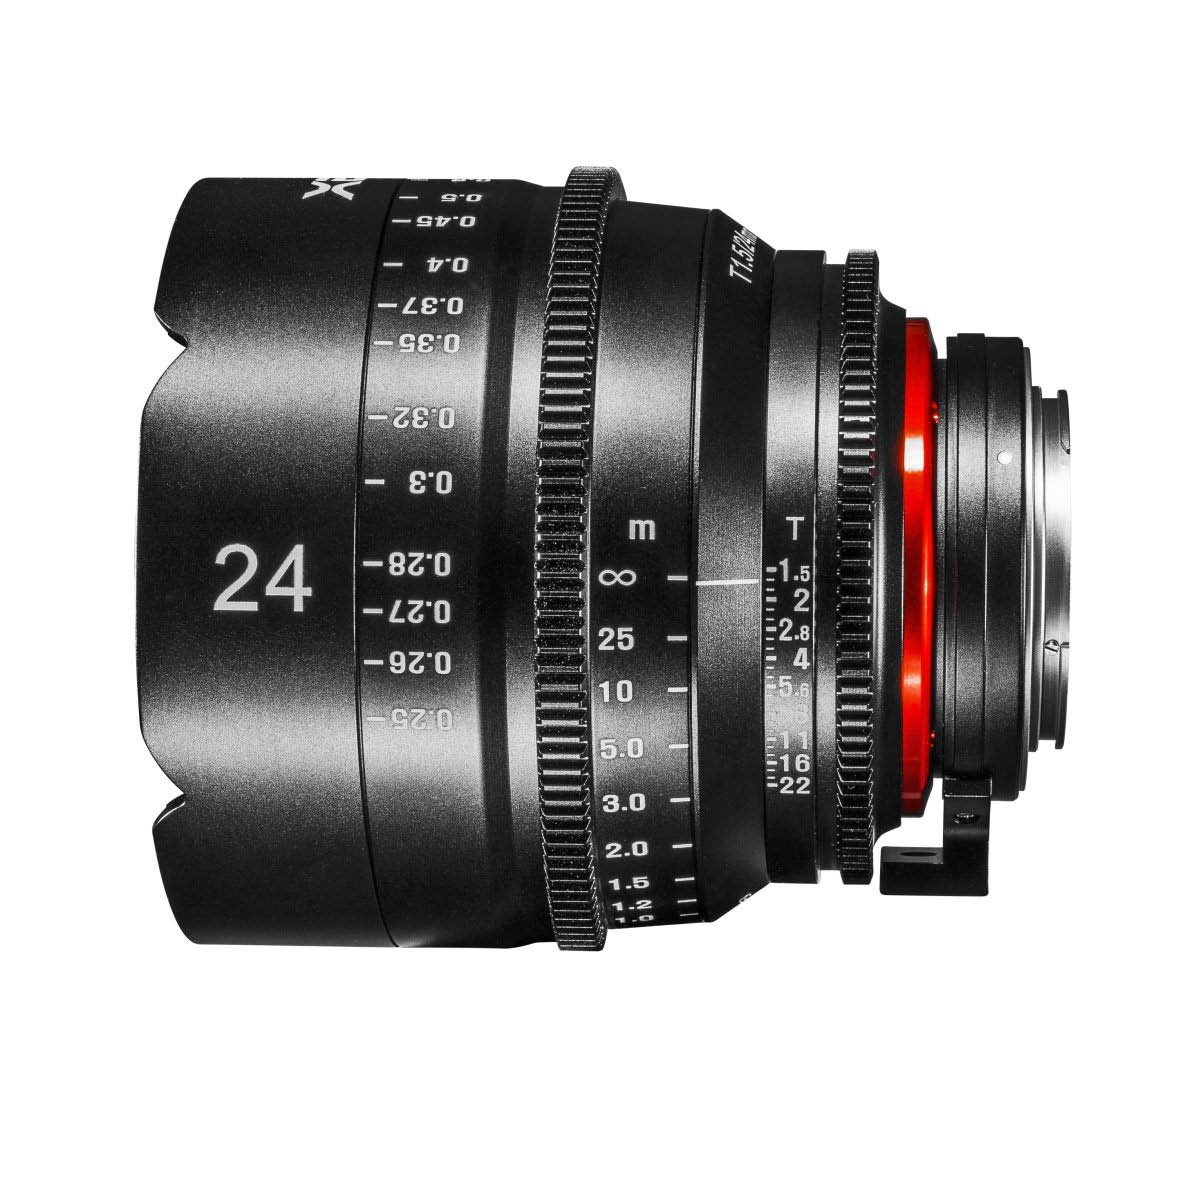 XEEN Cinema 24 mm 1:1,5 für Canon EF 